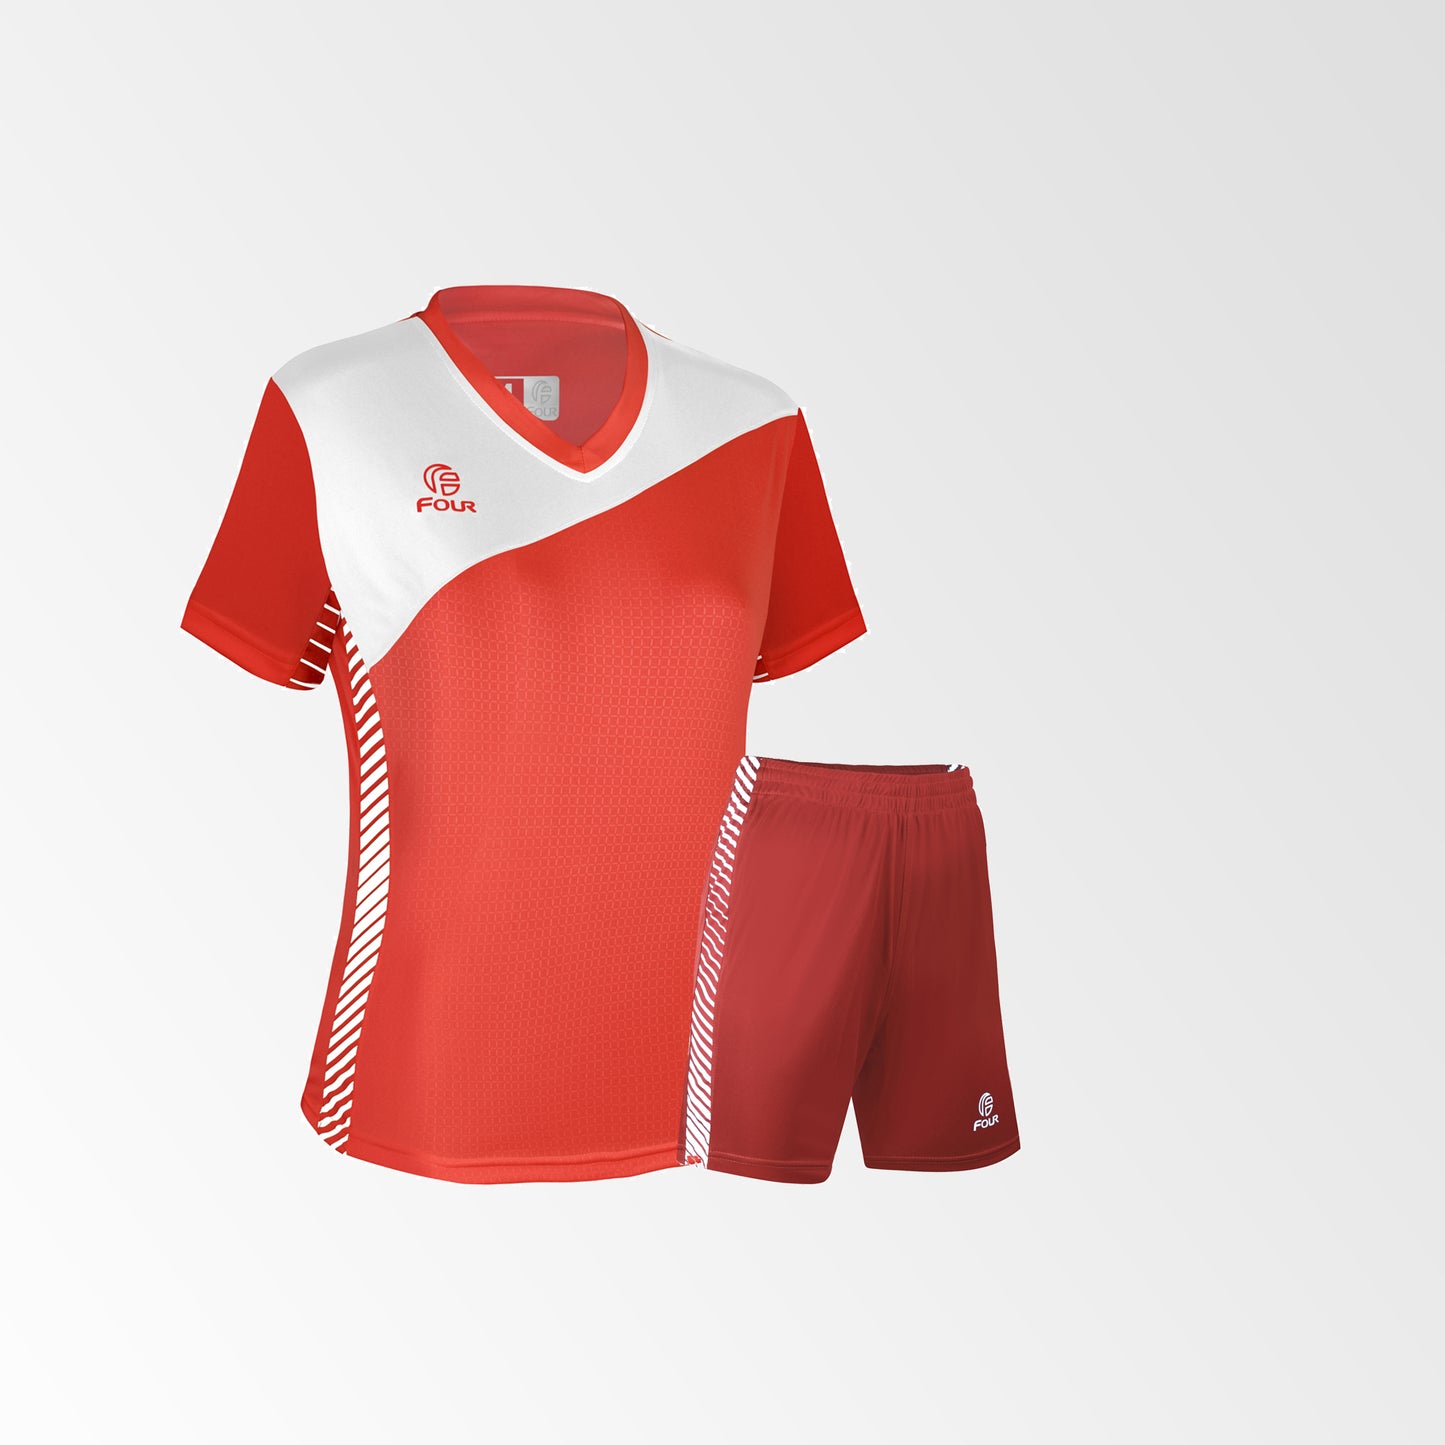 Camiseta de Futbol Mujer y Short Modelo Olympique Rojo Chile-Blanco